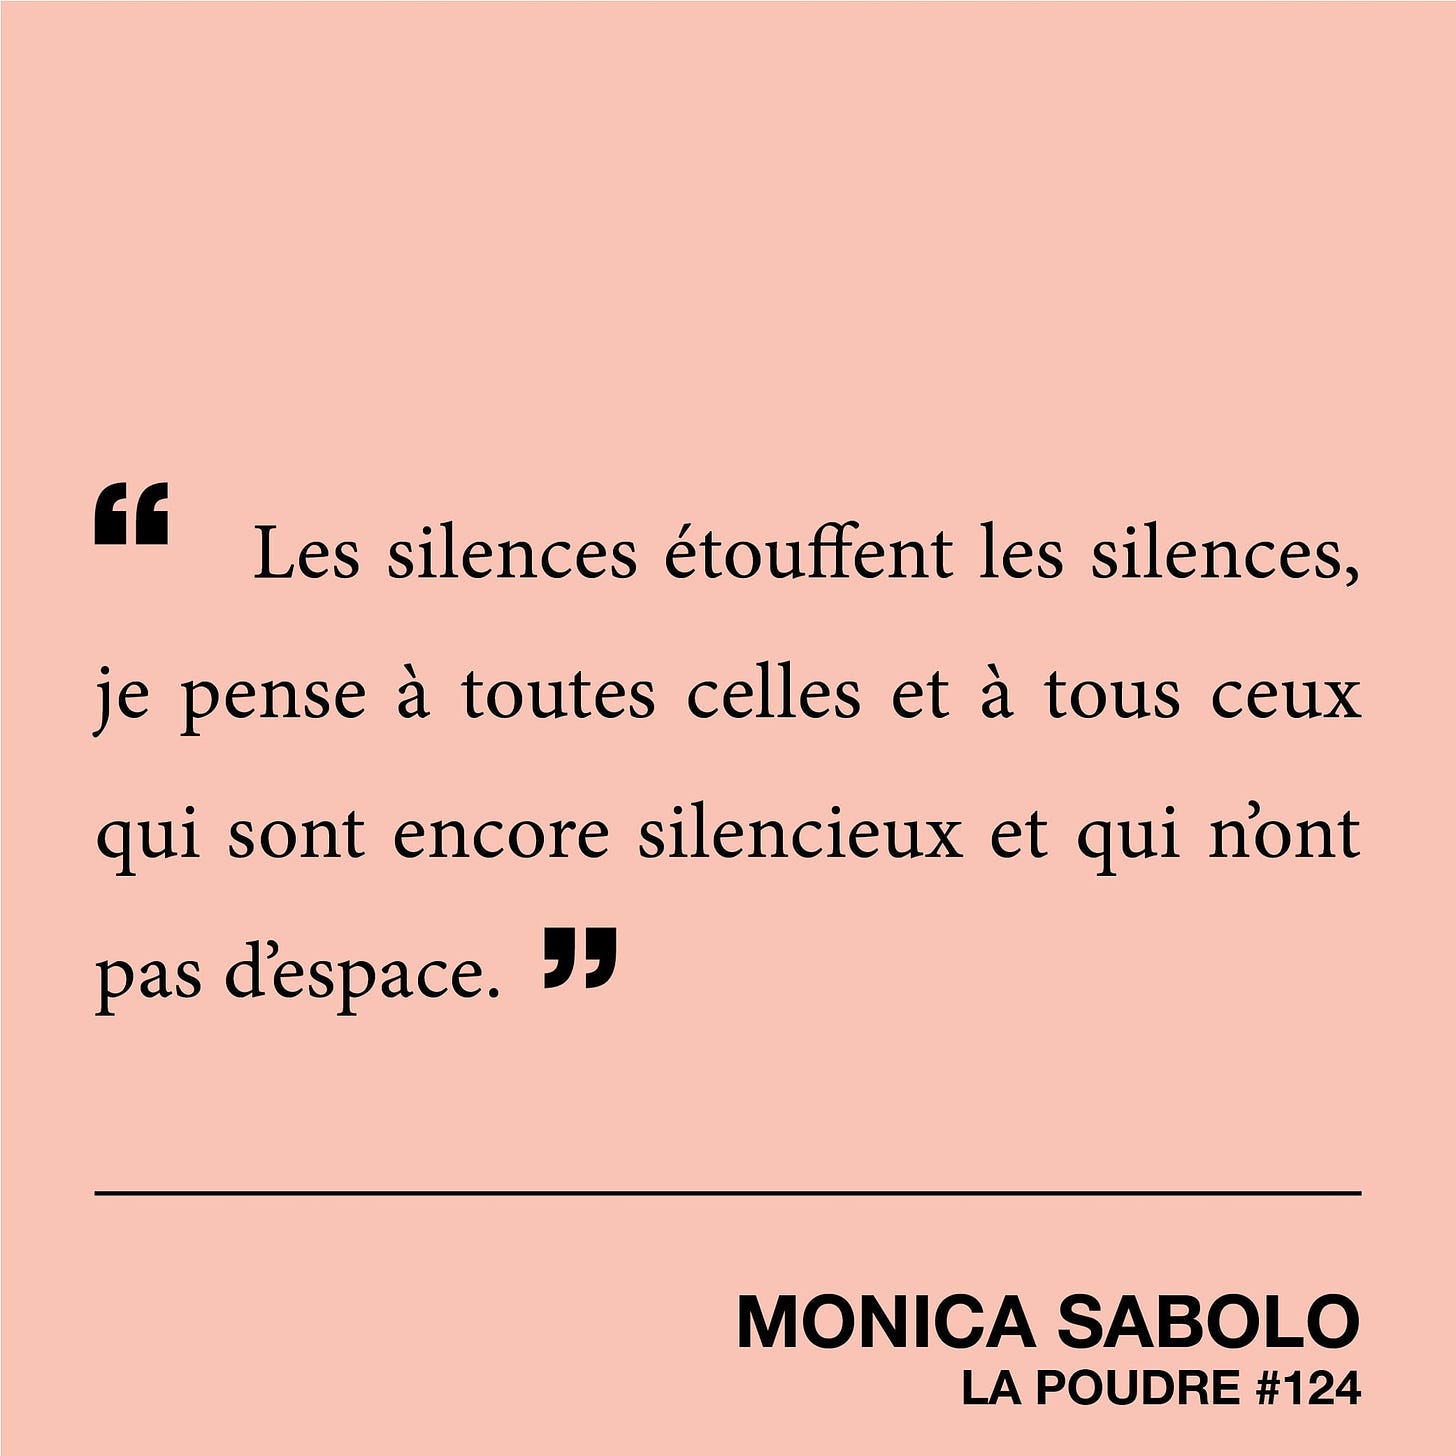 Peut être une image de une personne ou plus et texte qui dit ’" Les silences étouffent les silences, je pense à toutes celles et et à tous ceux qui sont sont encore silencieux et qui n'ont pas d'espace. " MONICA SABOLO LA POUDRE #124’